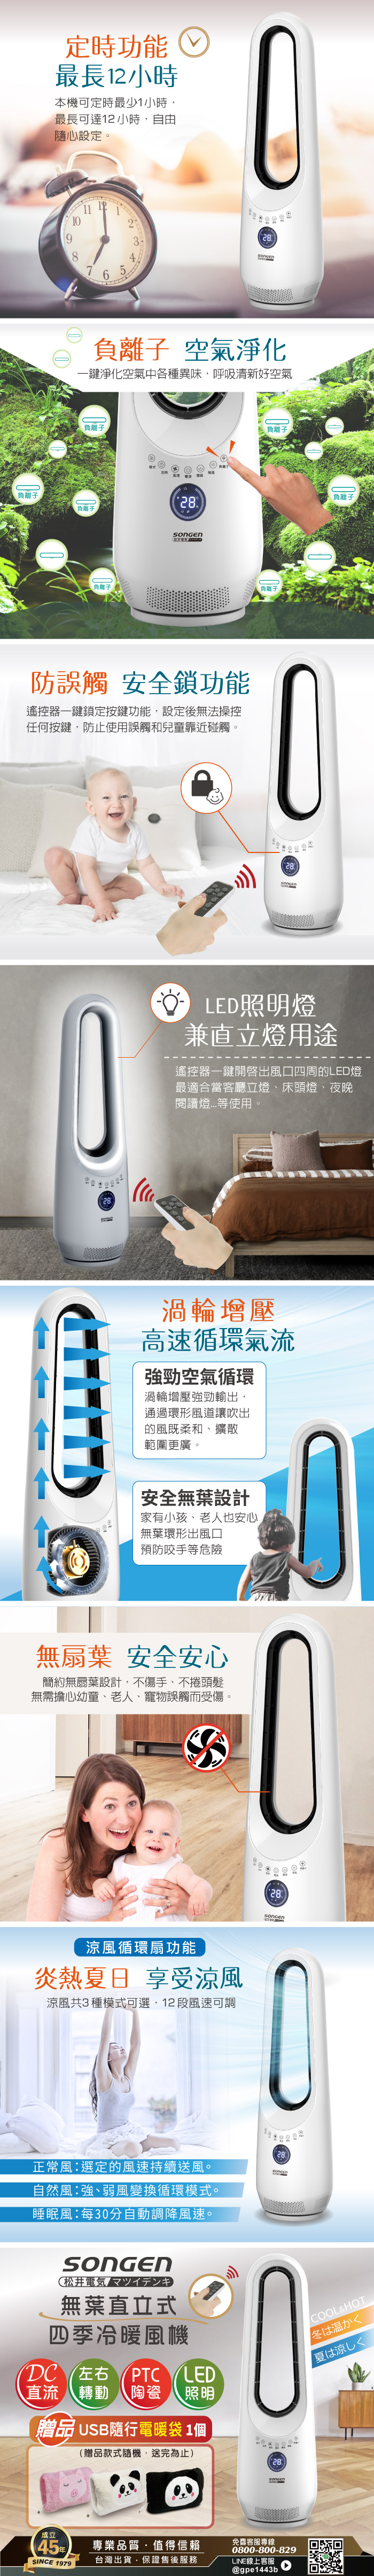 【松井】無葉直立式電暖器空調扇循環扇 萌趣毛絨電暖袋組(SG-215ACW)